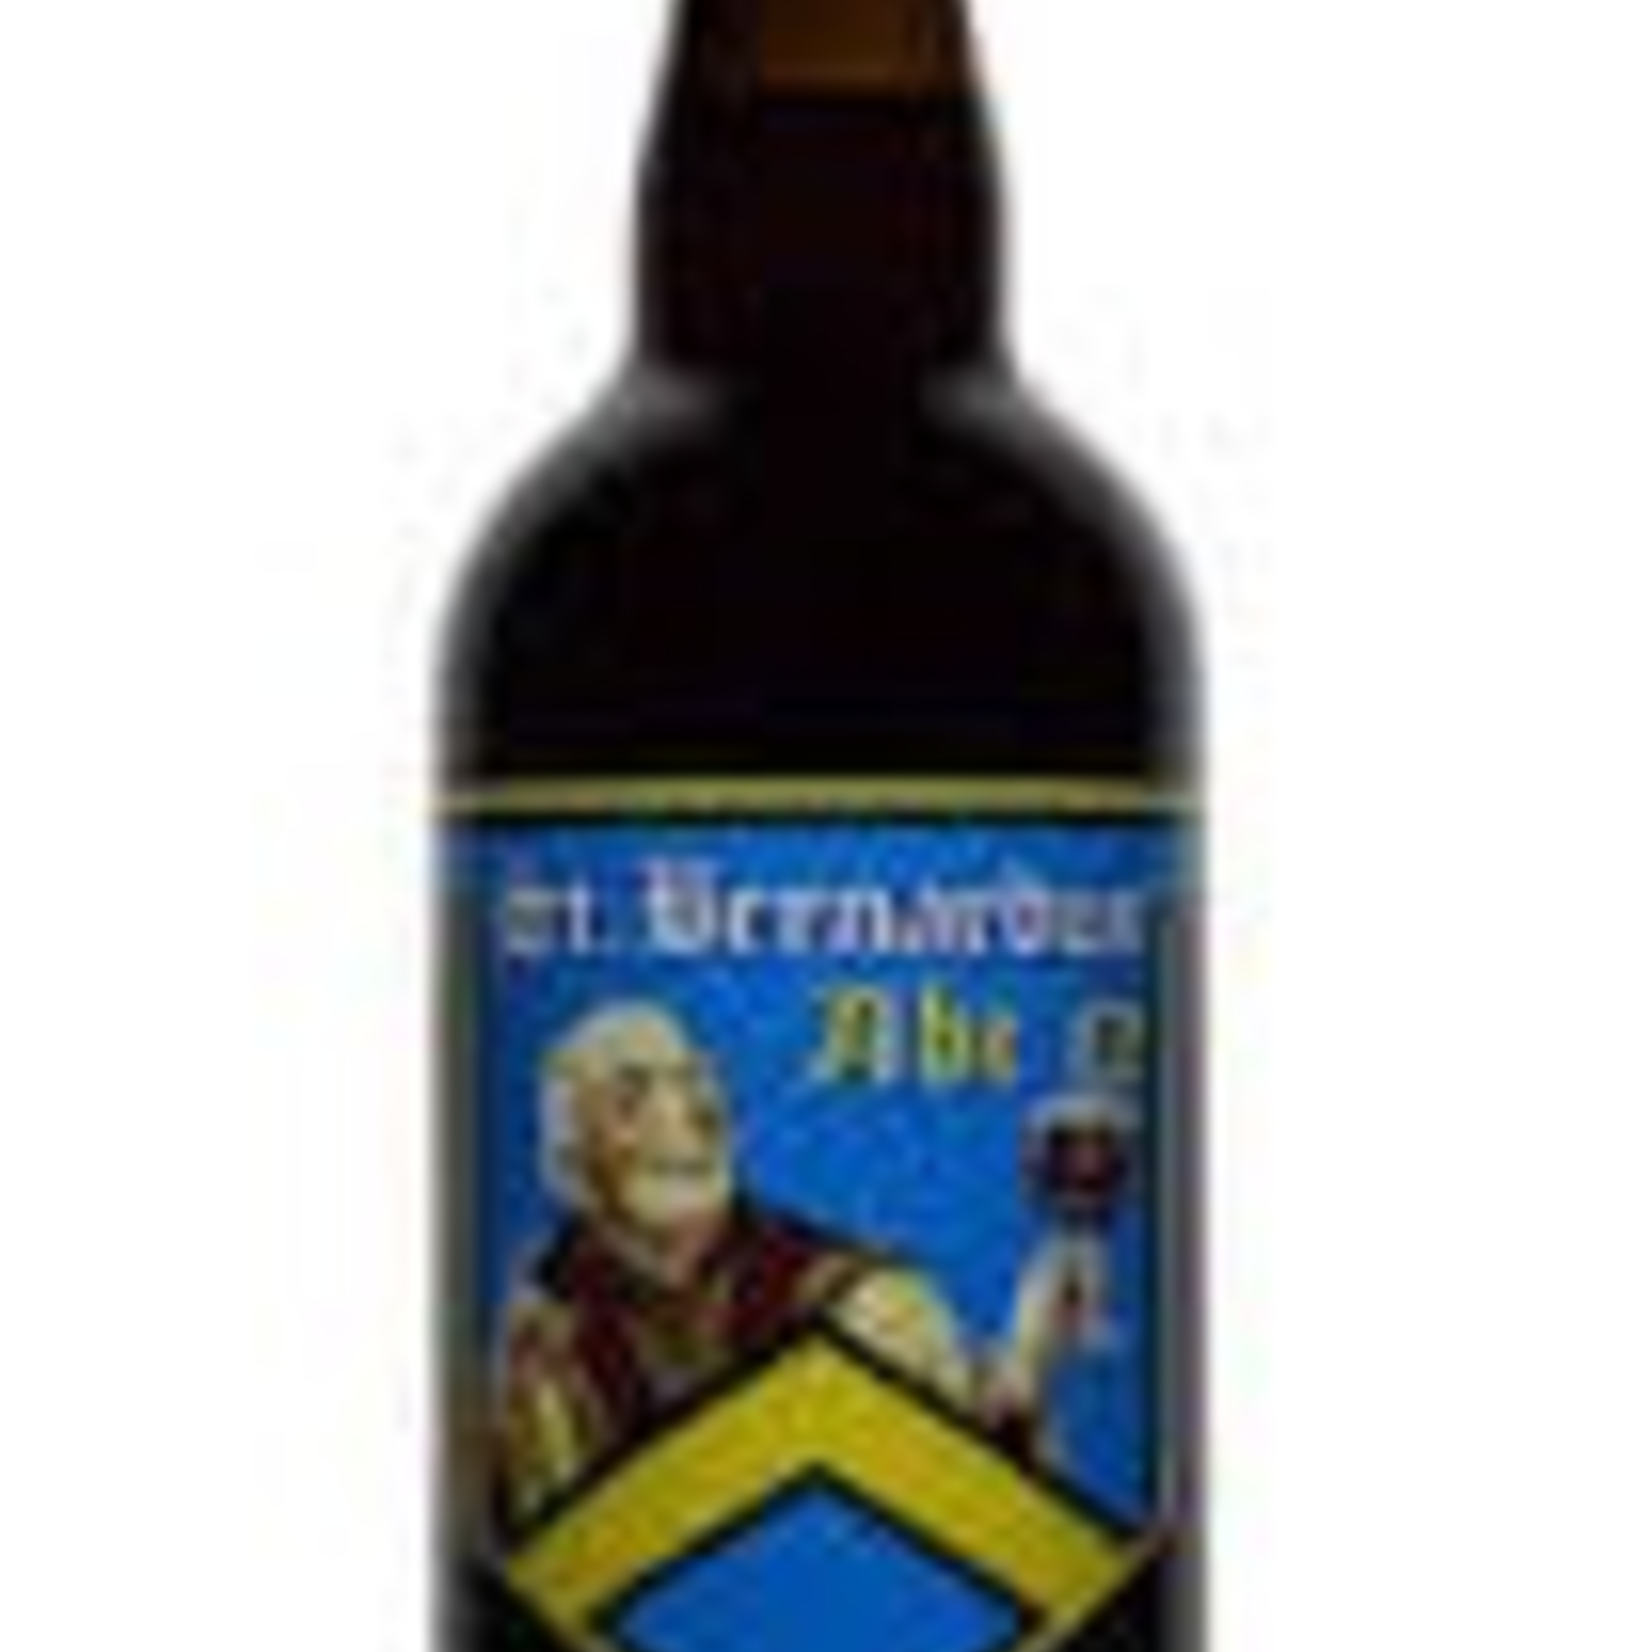 Belgium St. Bernardus Abt 12